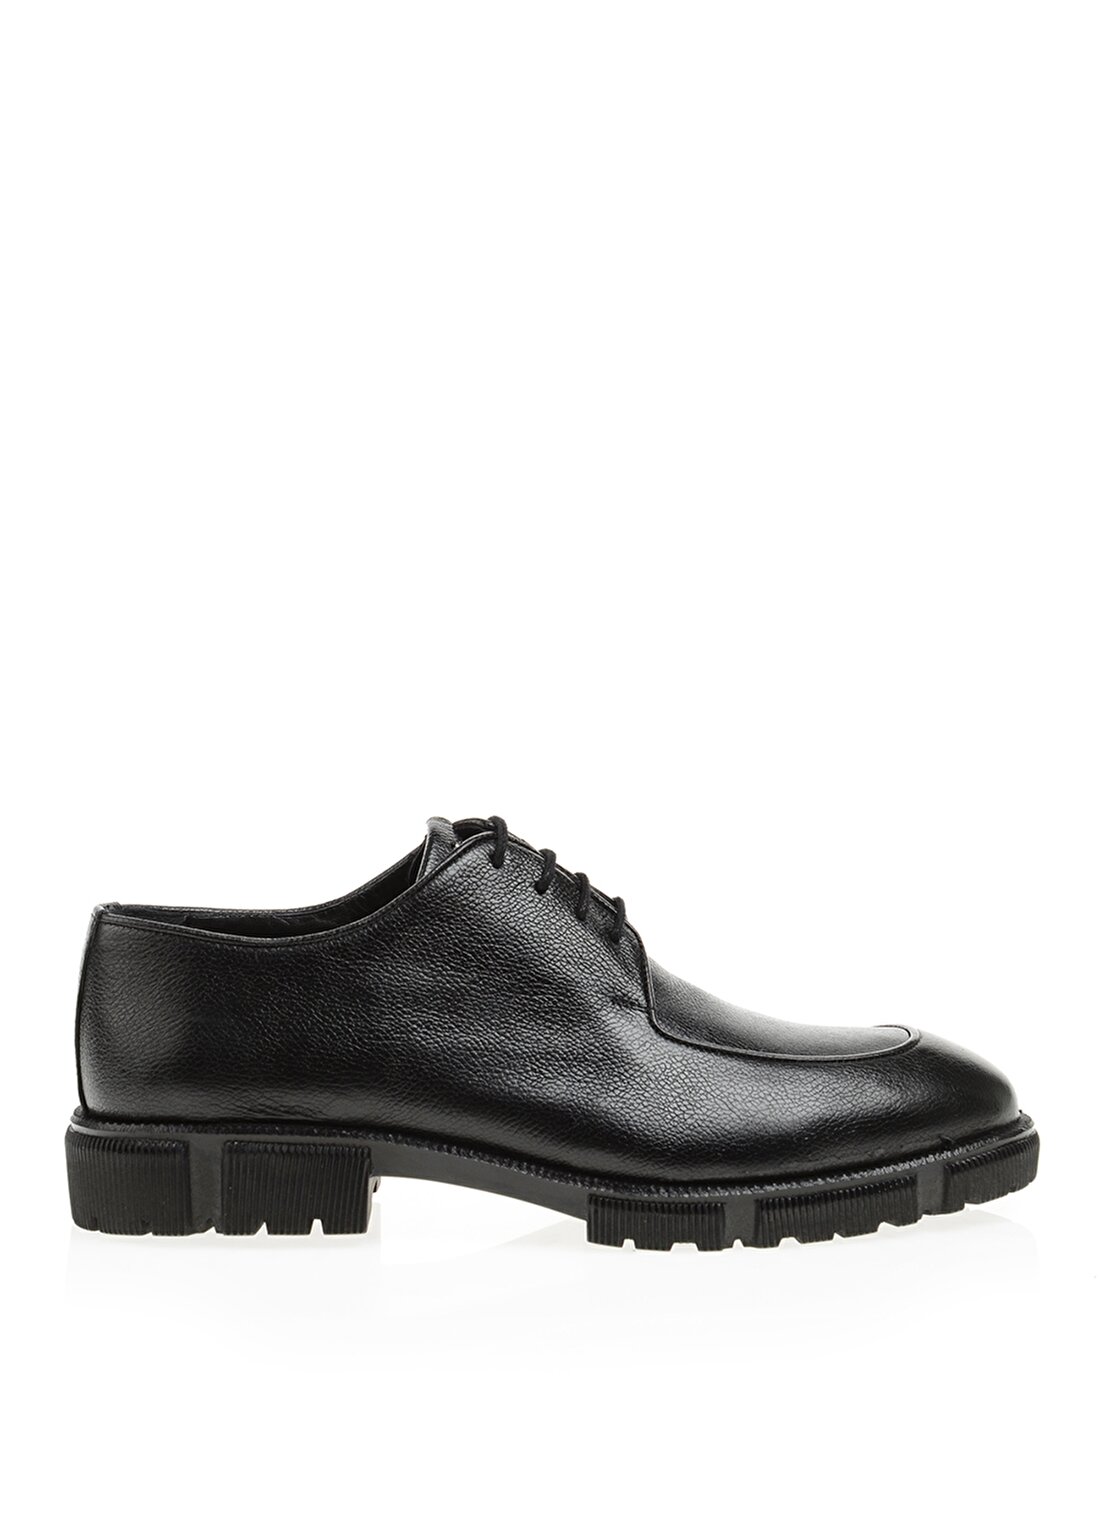 Fabrika Deri Siyah Erkek Klasik Ayakkabı VALIANT